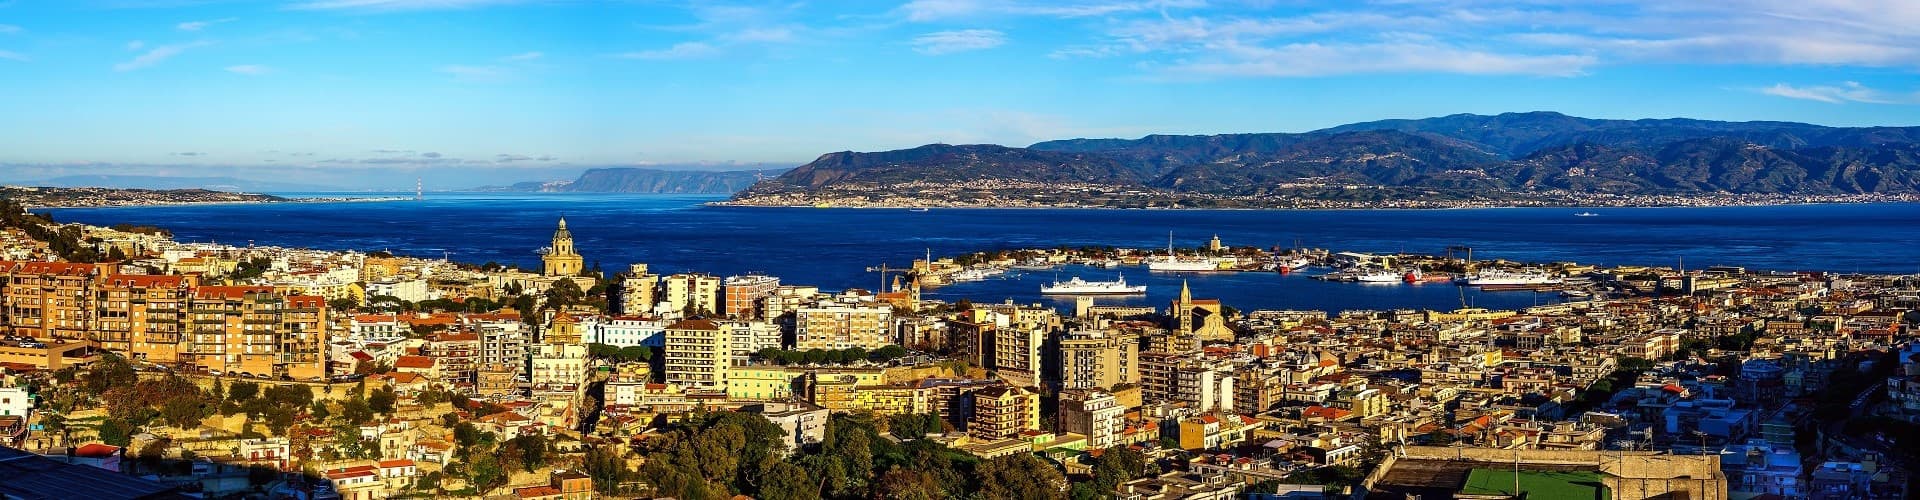 Messina Skyline